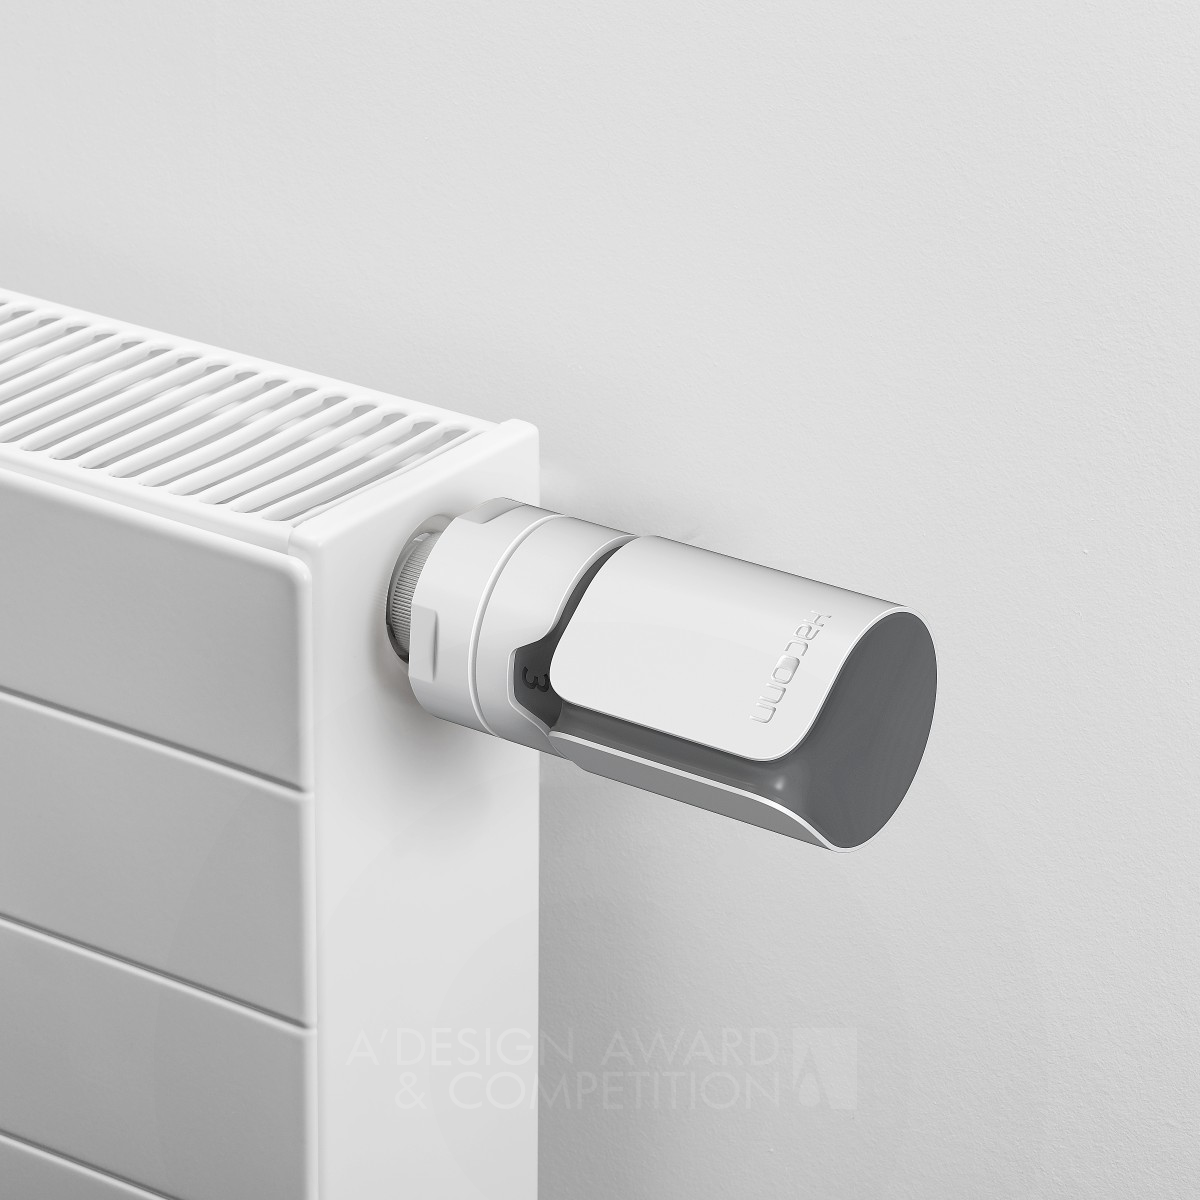 Haconn Radiator Thermostat: Un Diseño Elegante y Funcional